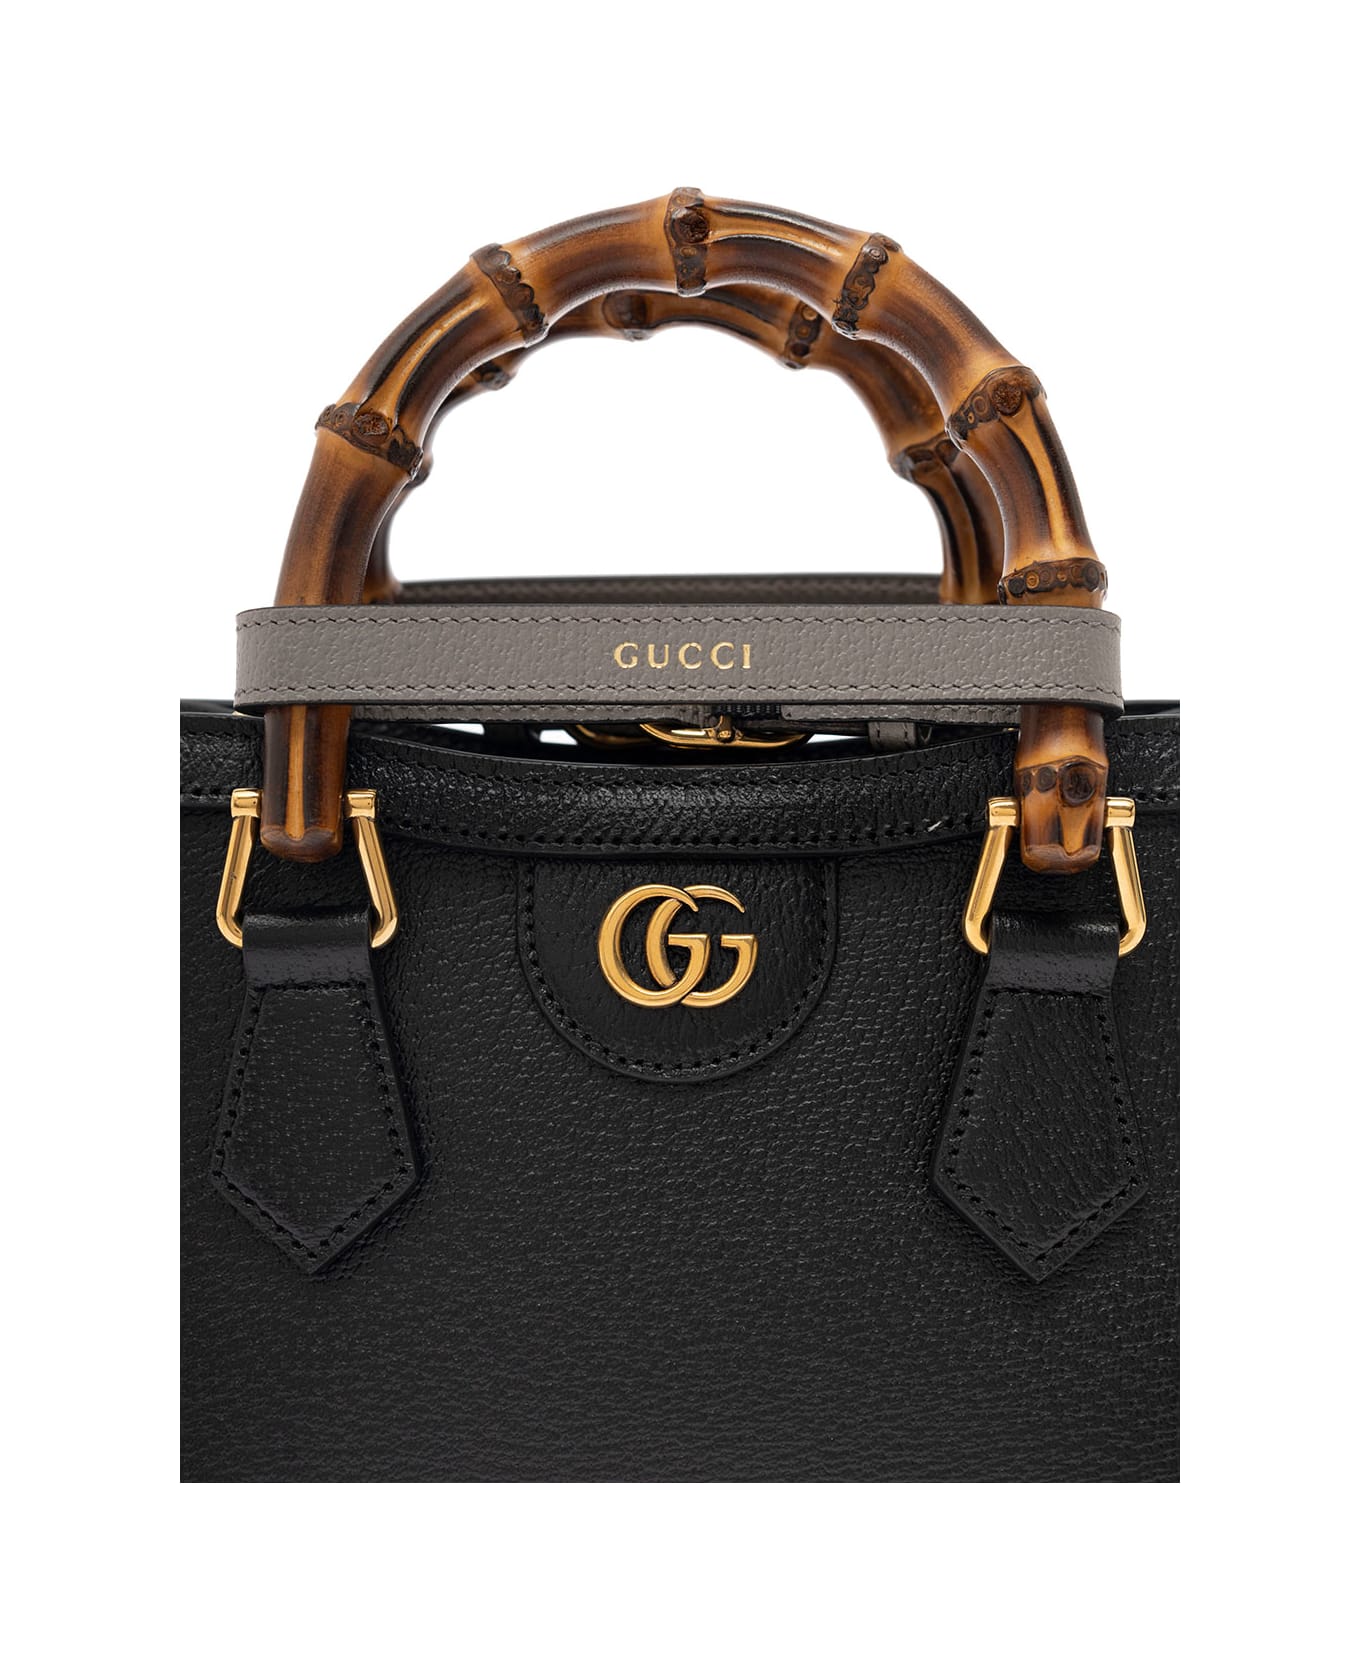 Gucci Handbag Diana Doll.pig/d